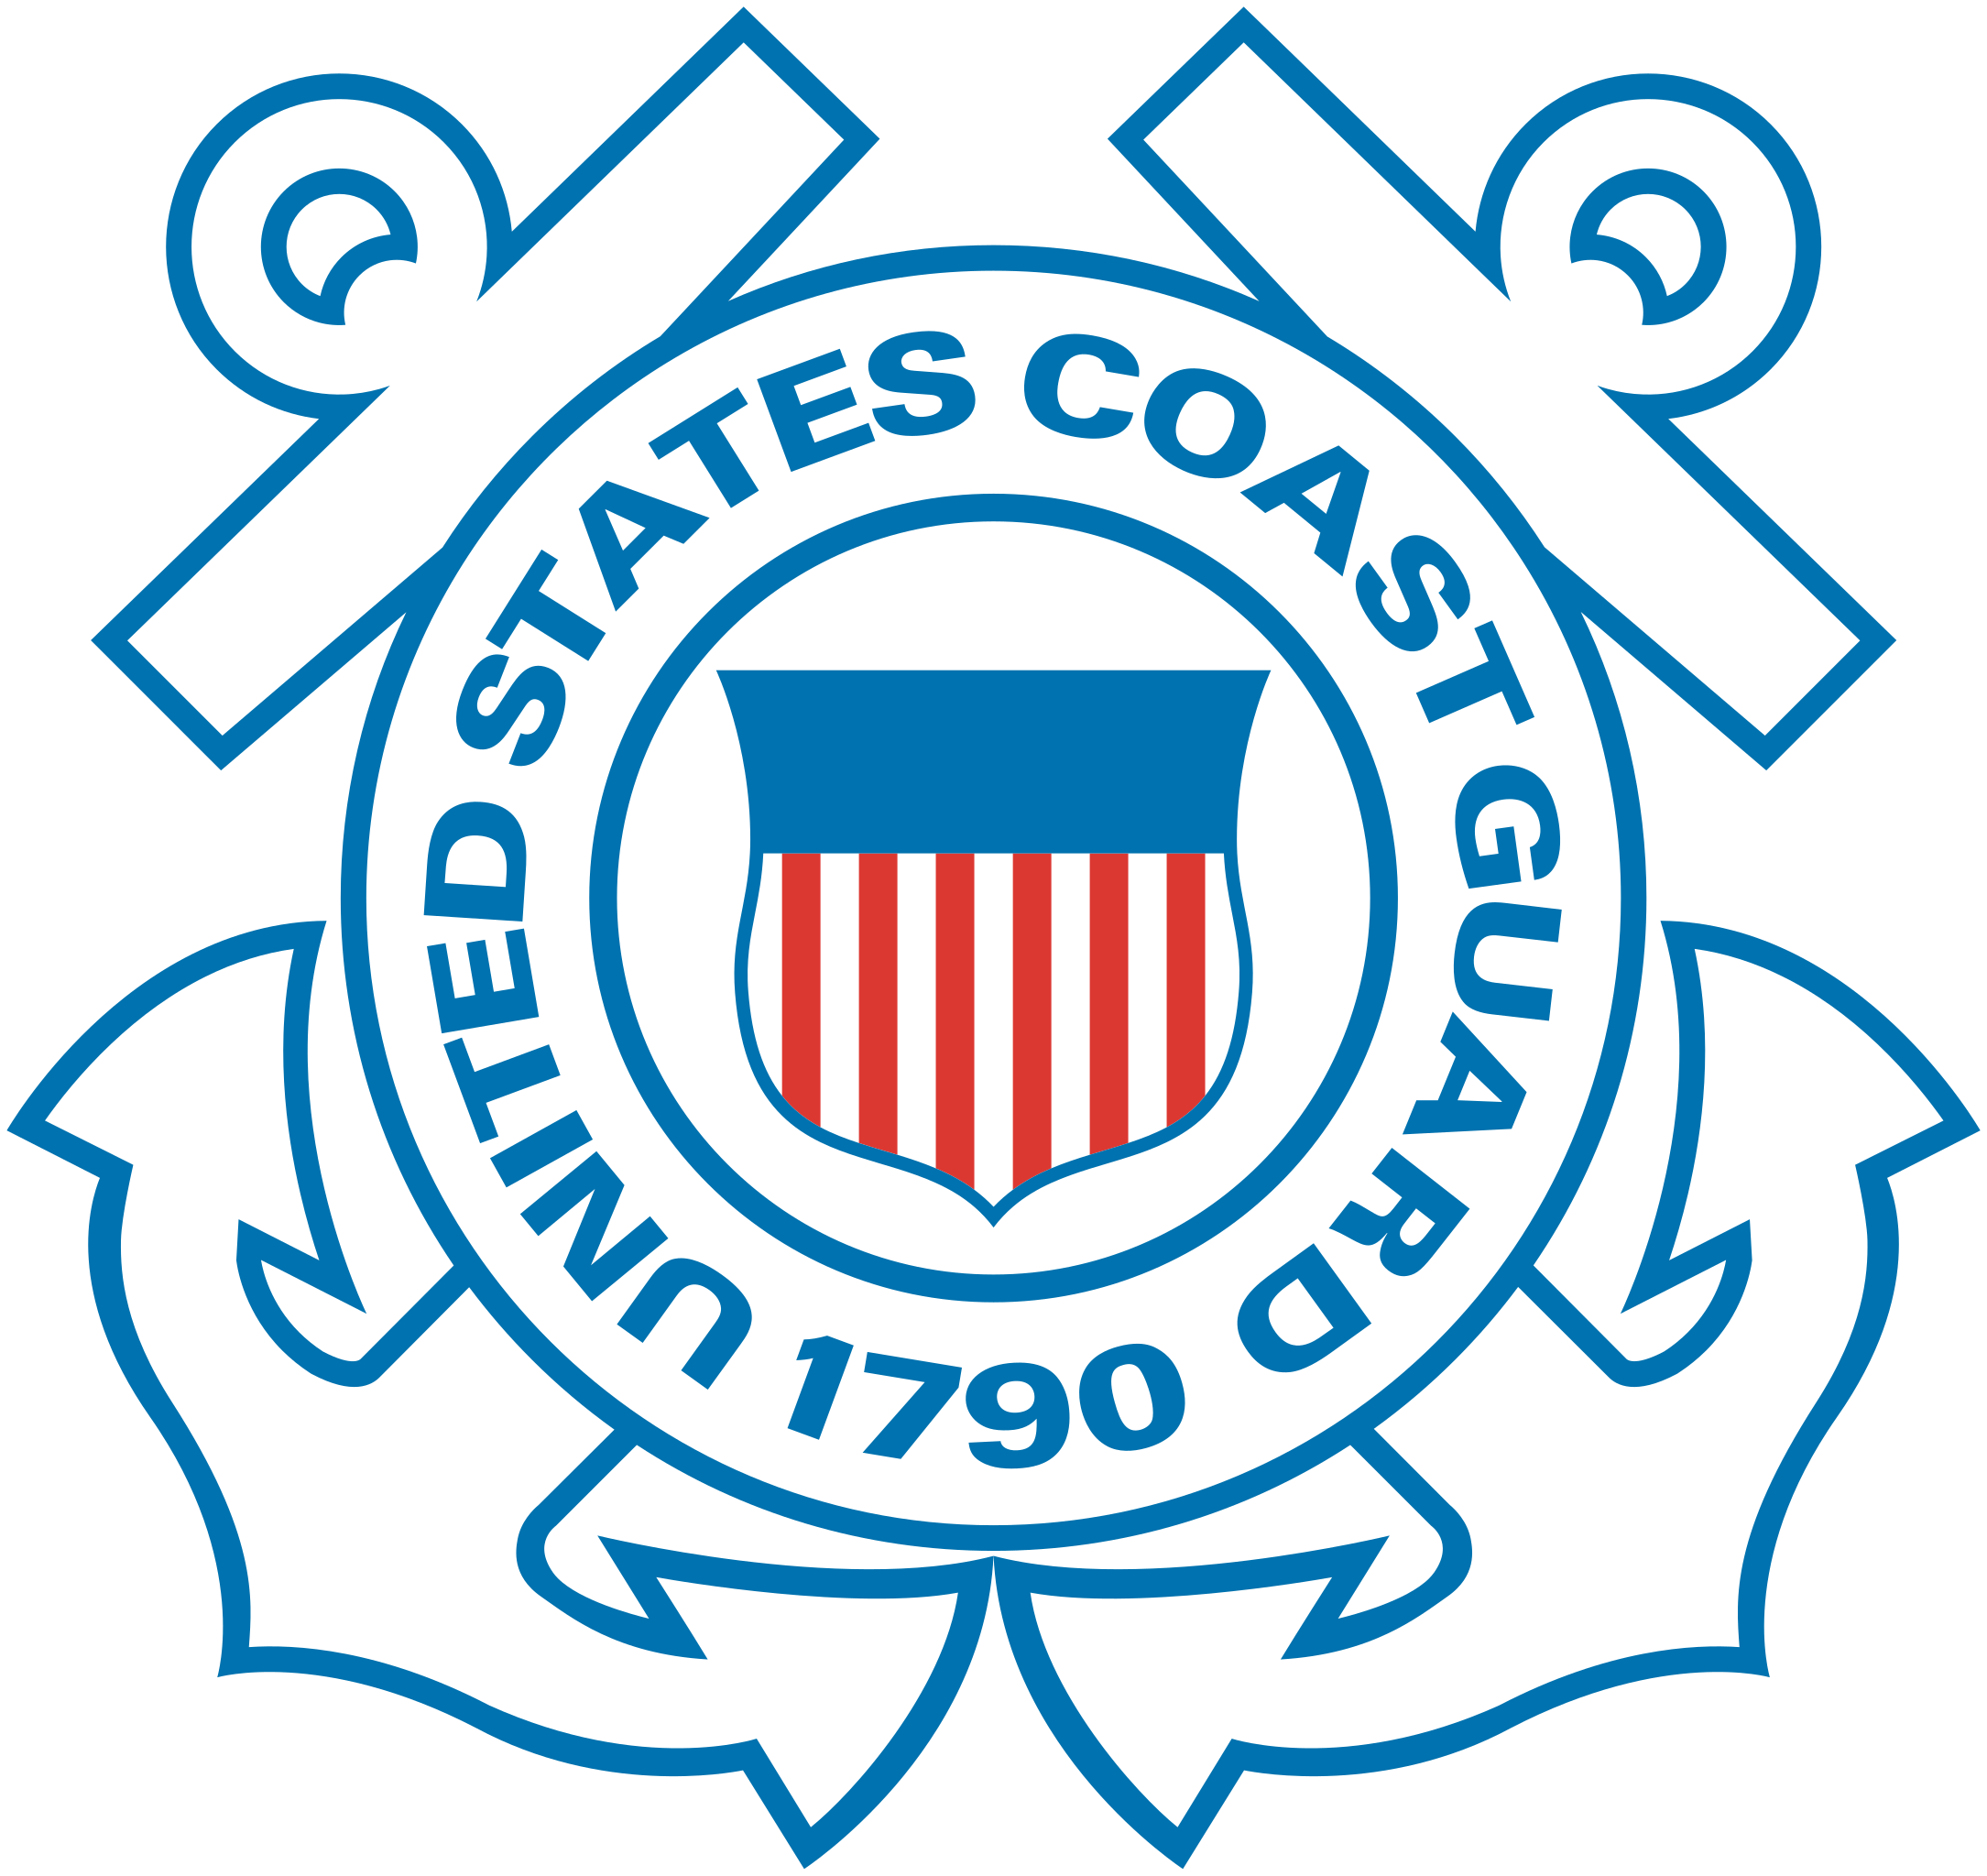 Official emblem of the U.S. Coast Guard